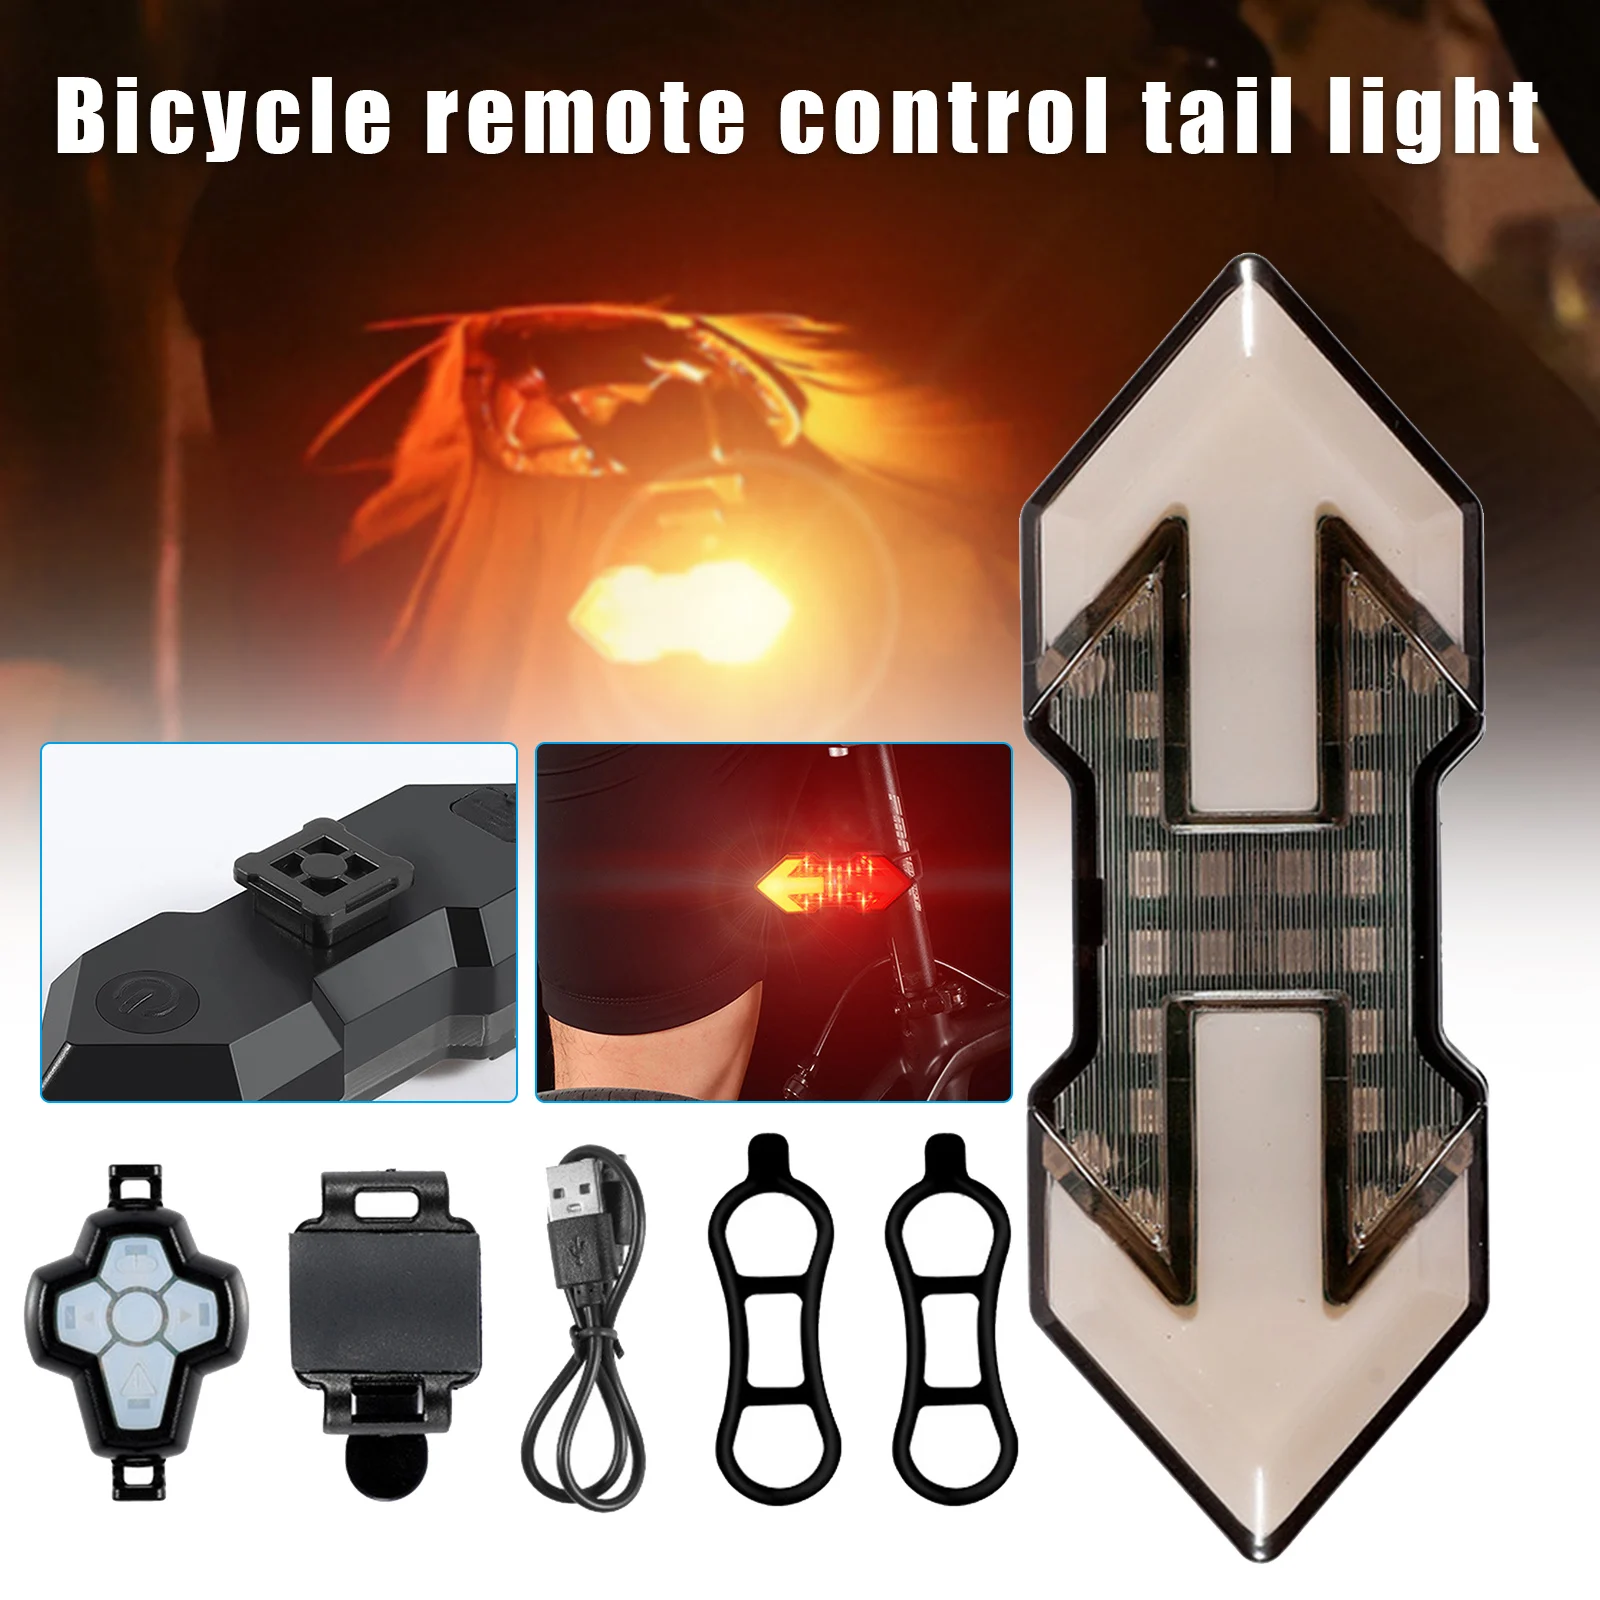 

Задний Фонарь велосипедный с поворотными сигналами, перезаряжаемый от USB ультра яркий светодиодный предупреждающий сигнал безопасности, в...